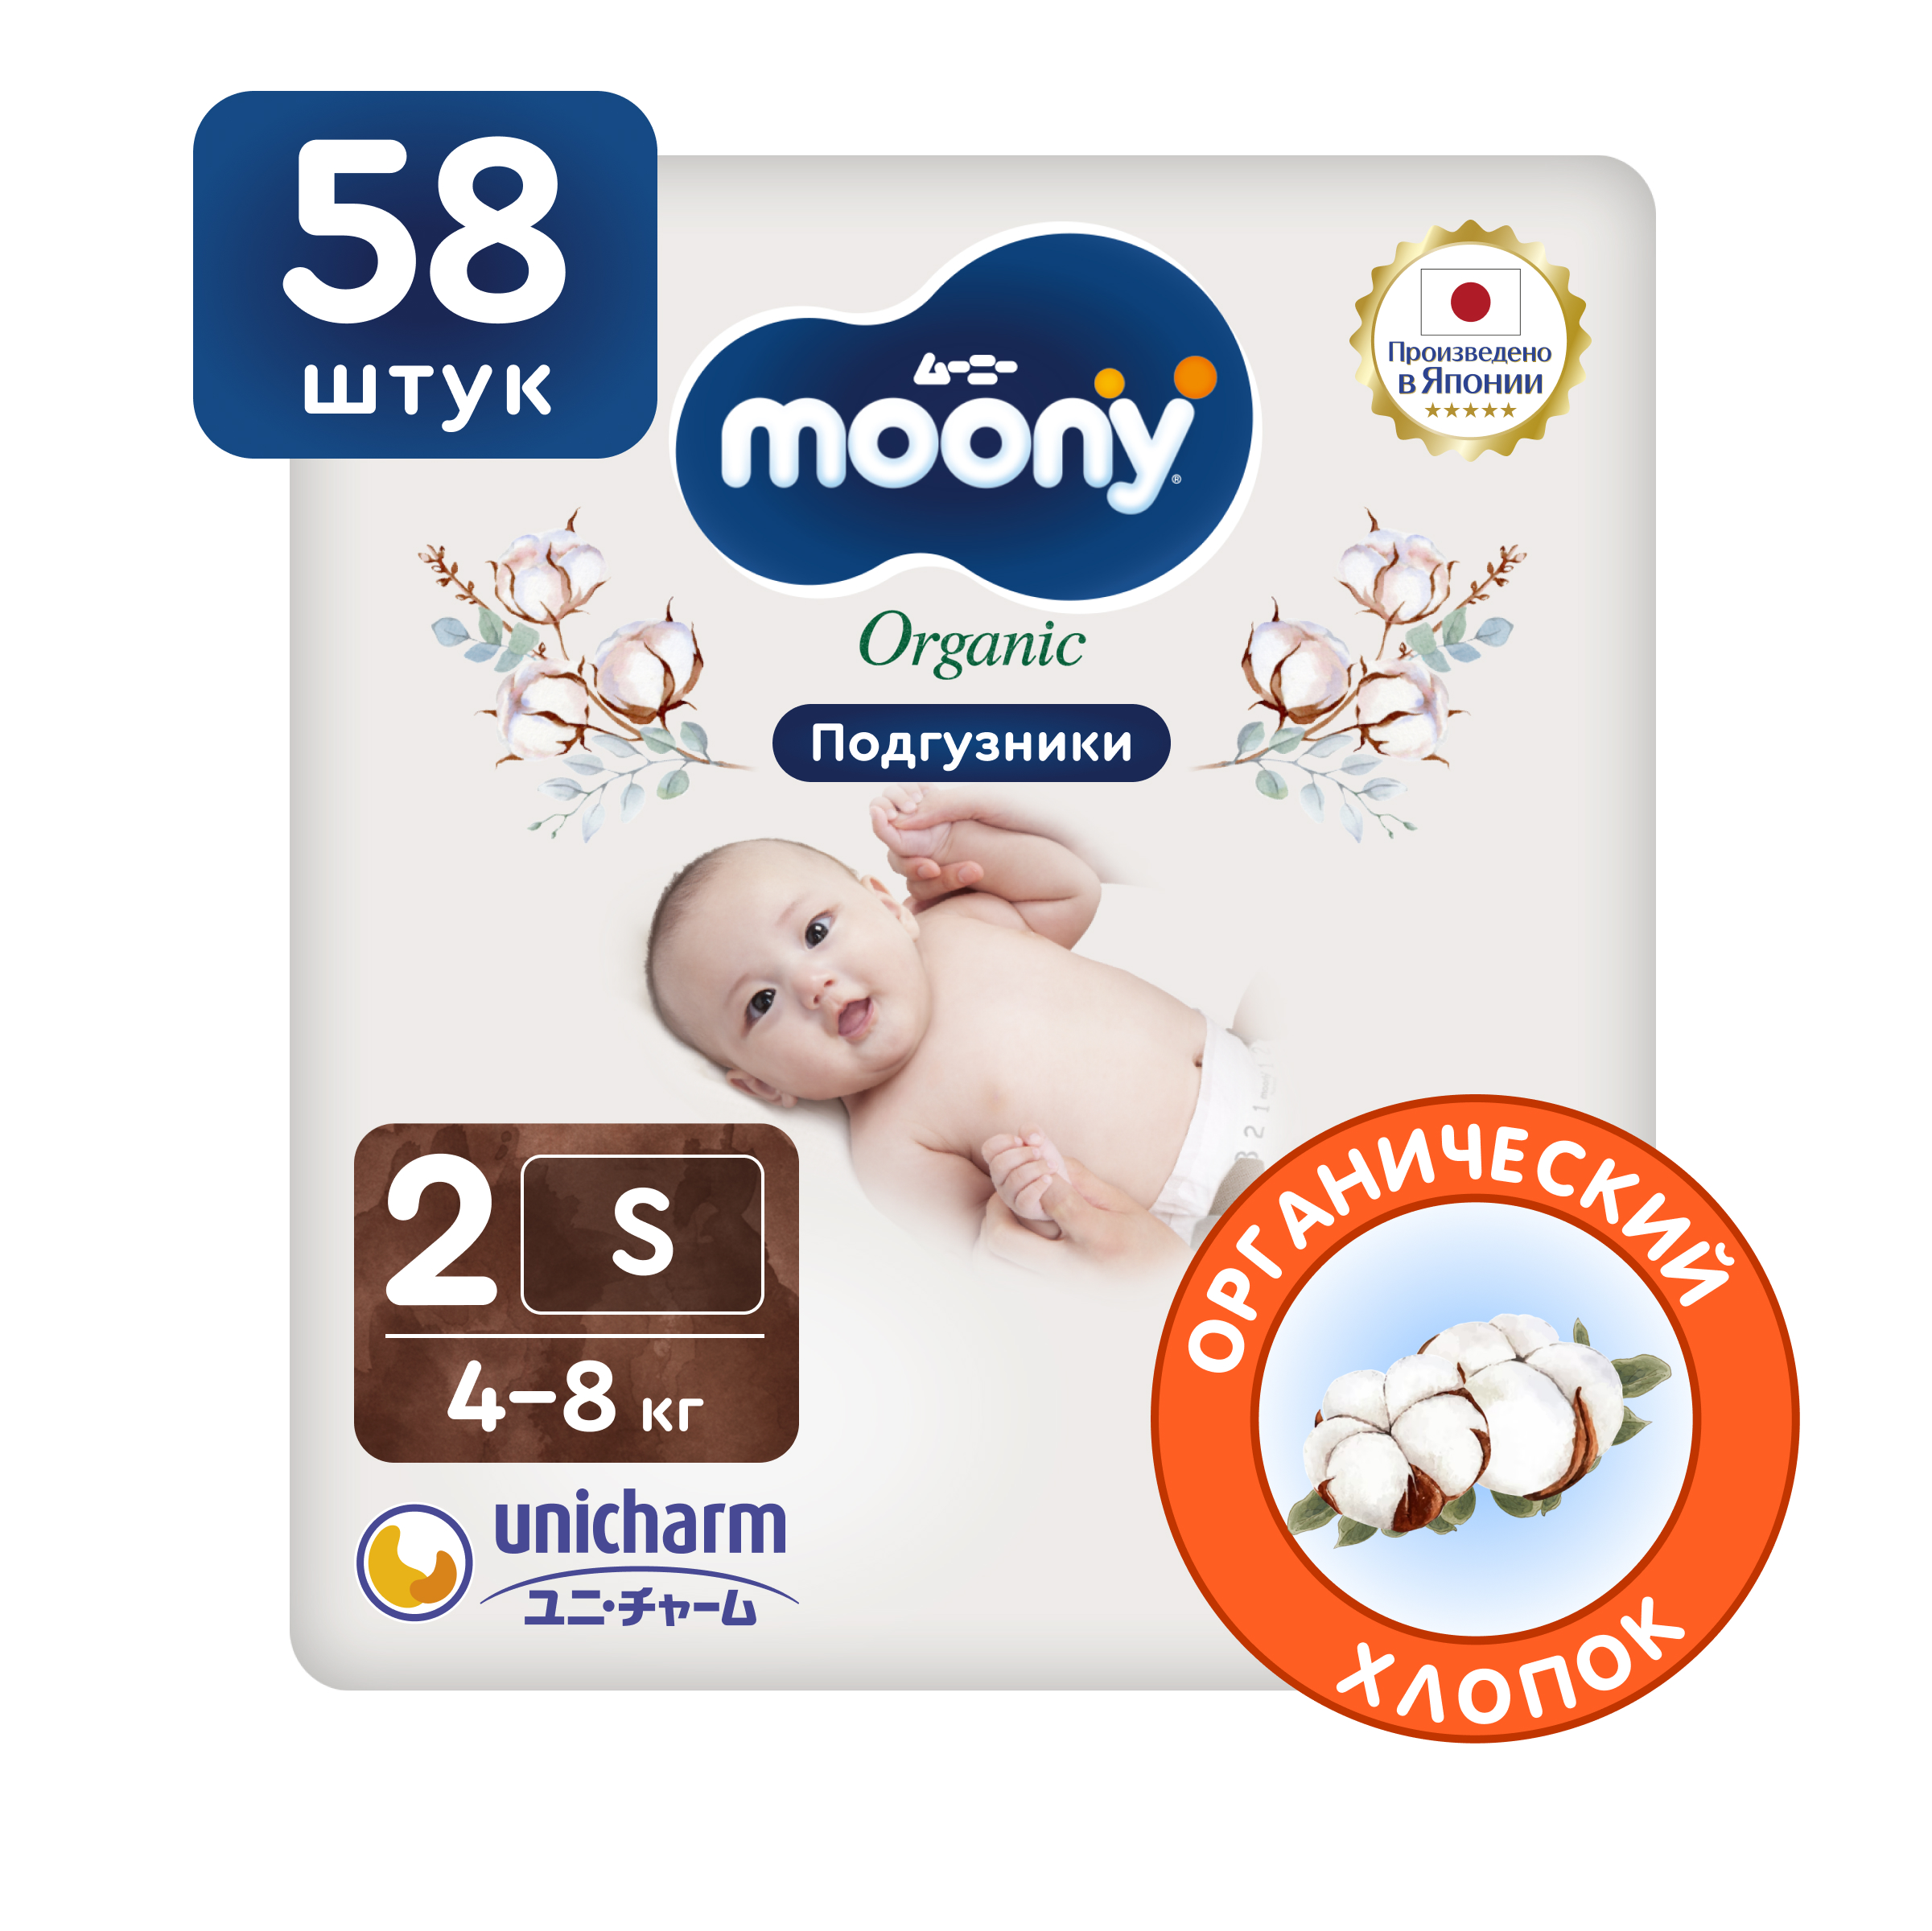 Японские подгузники для новорожденных Moony Organic 2 S, 4-8 кг, 58 шт японские подгузники для новорожденных moony organic 2 s 4 8 кг 14 шт